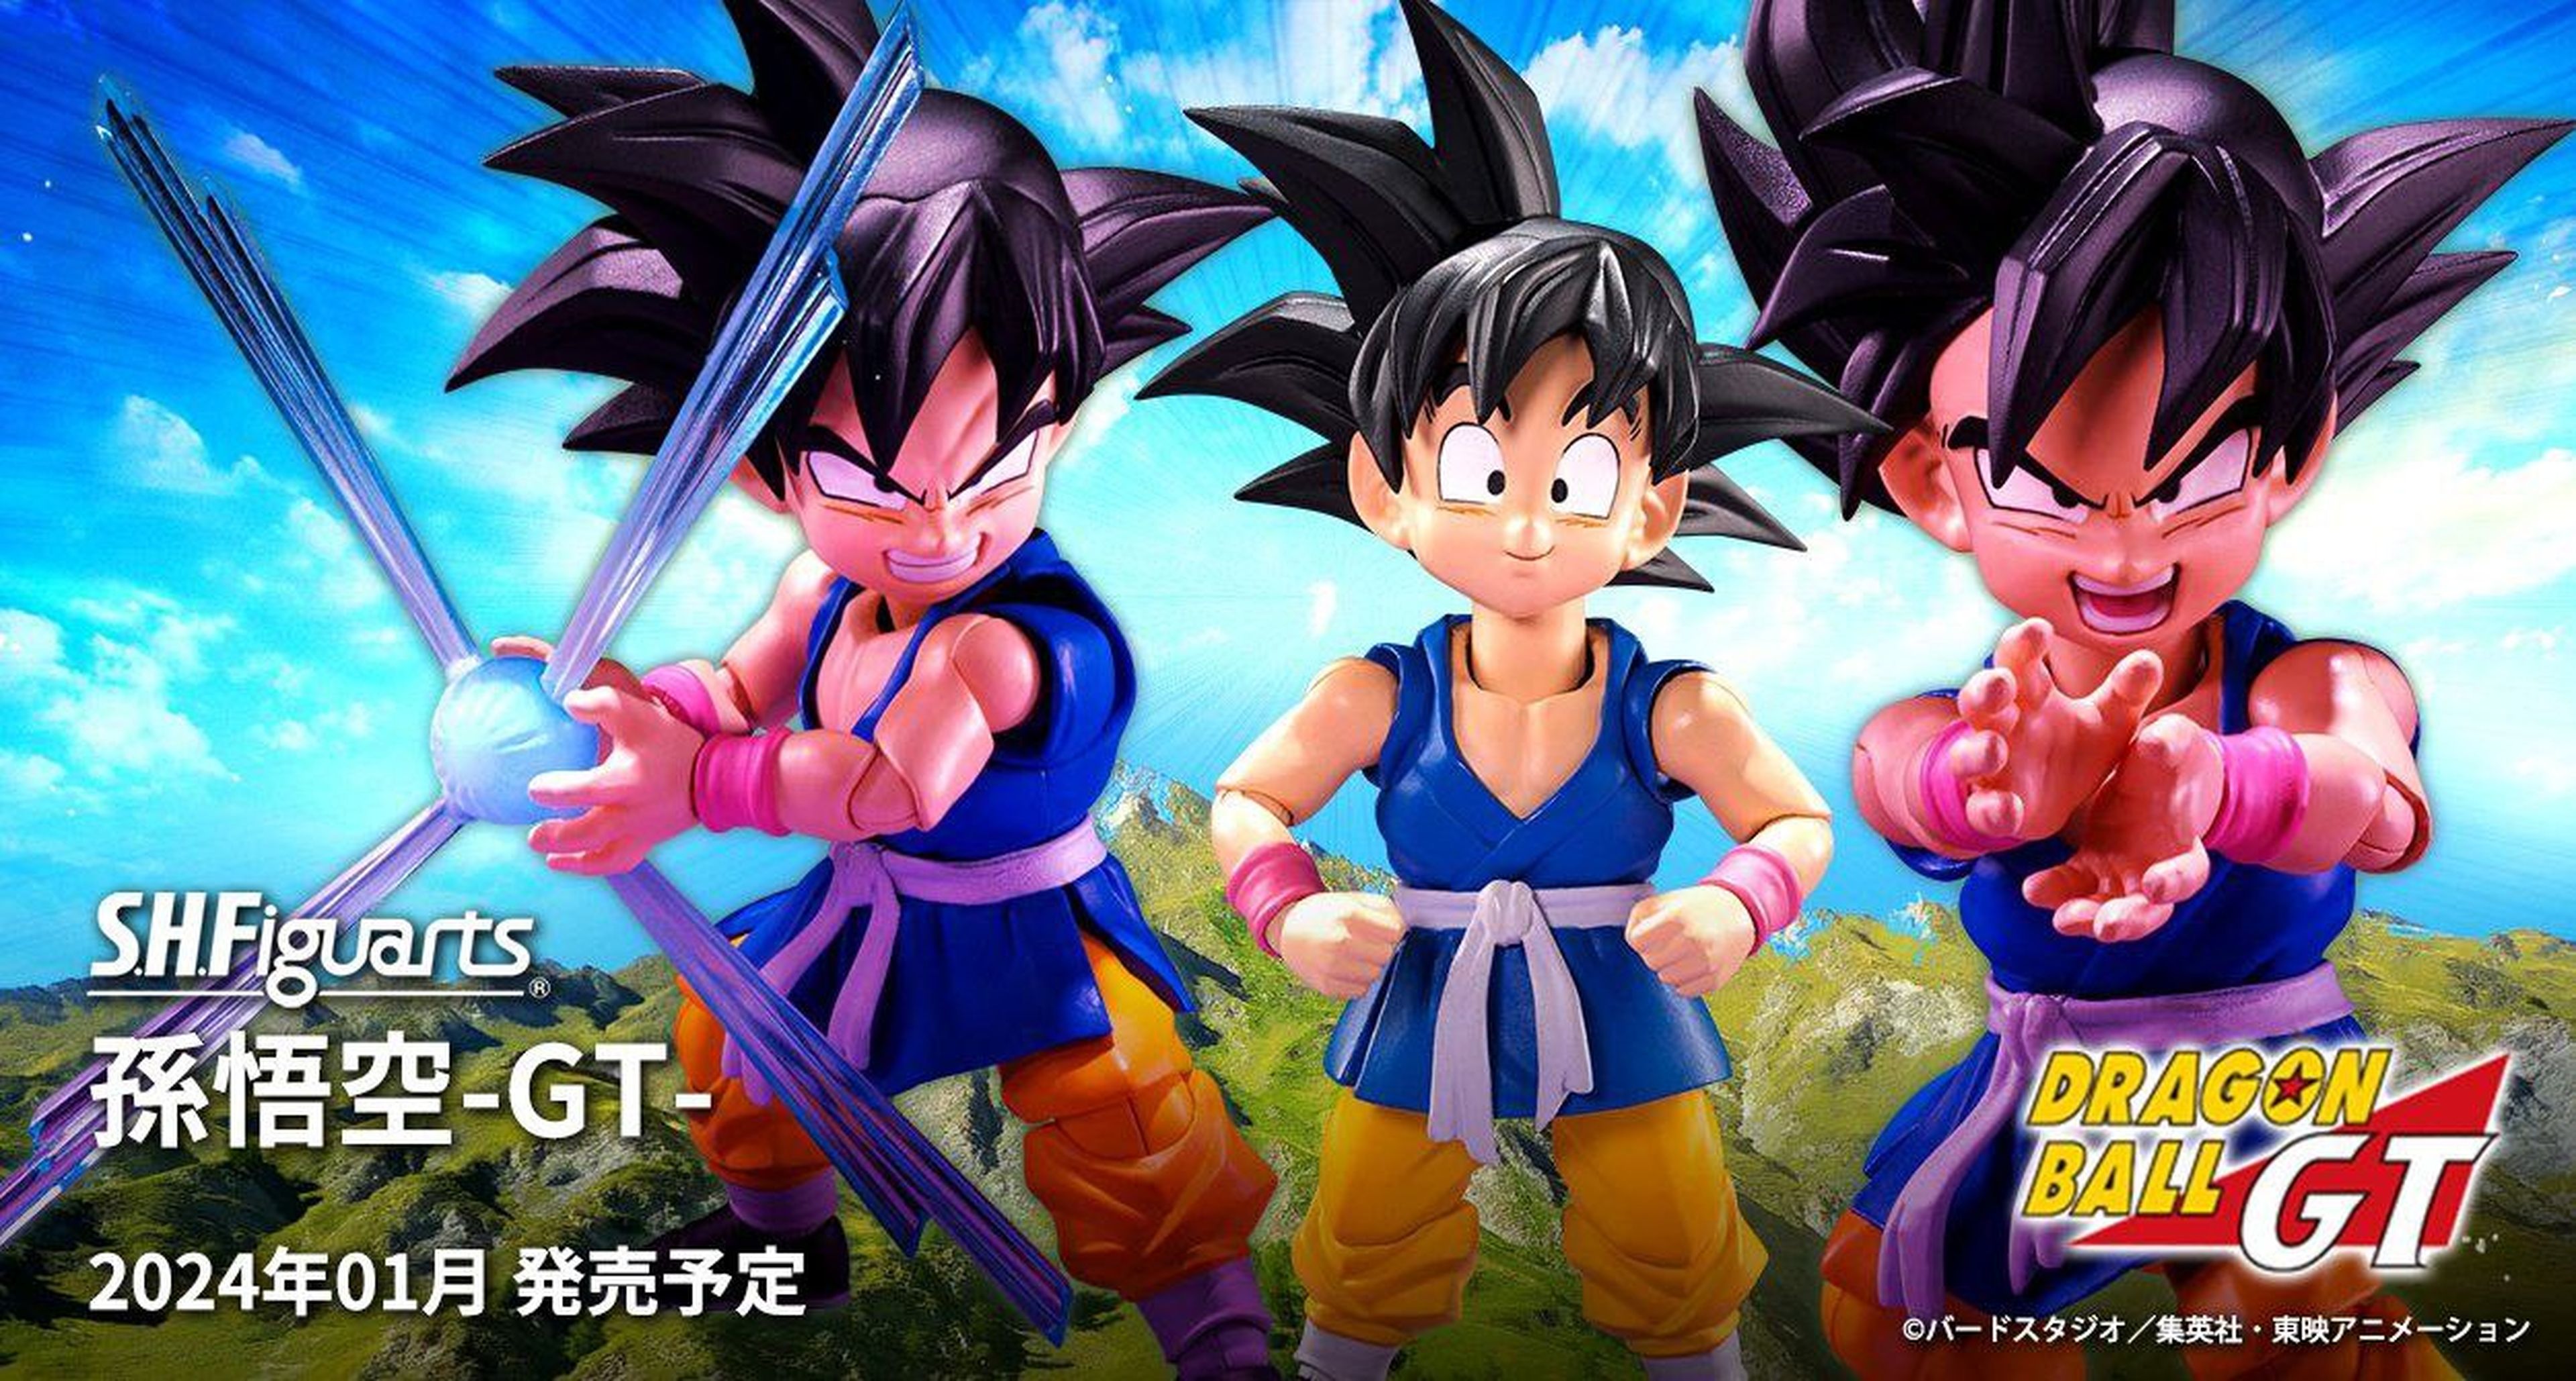 Dragon Ball GT - Goku niño regresa con una nueva figura articulada SH Figuarts totalmente oficial